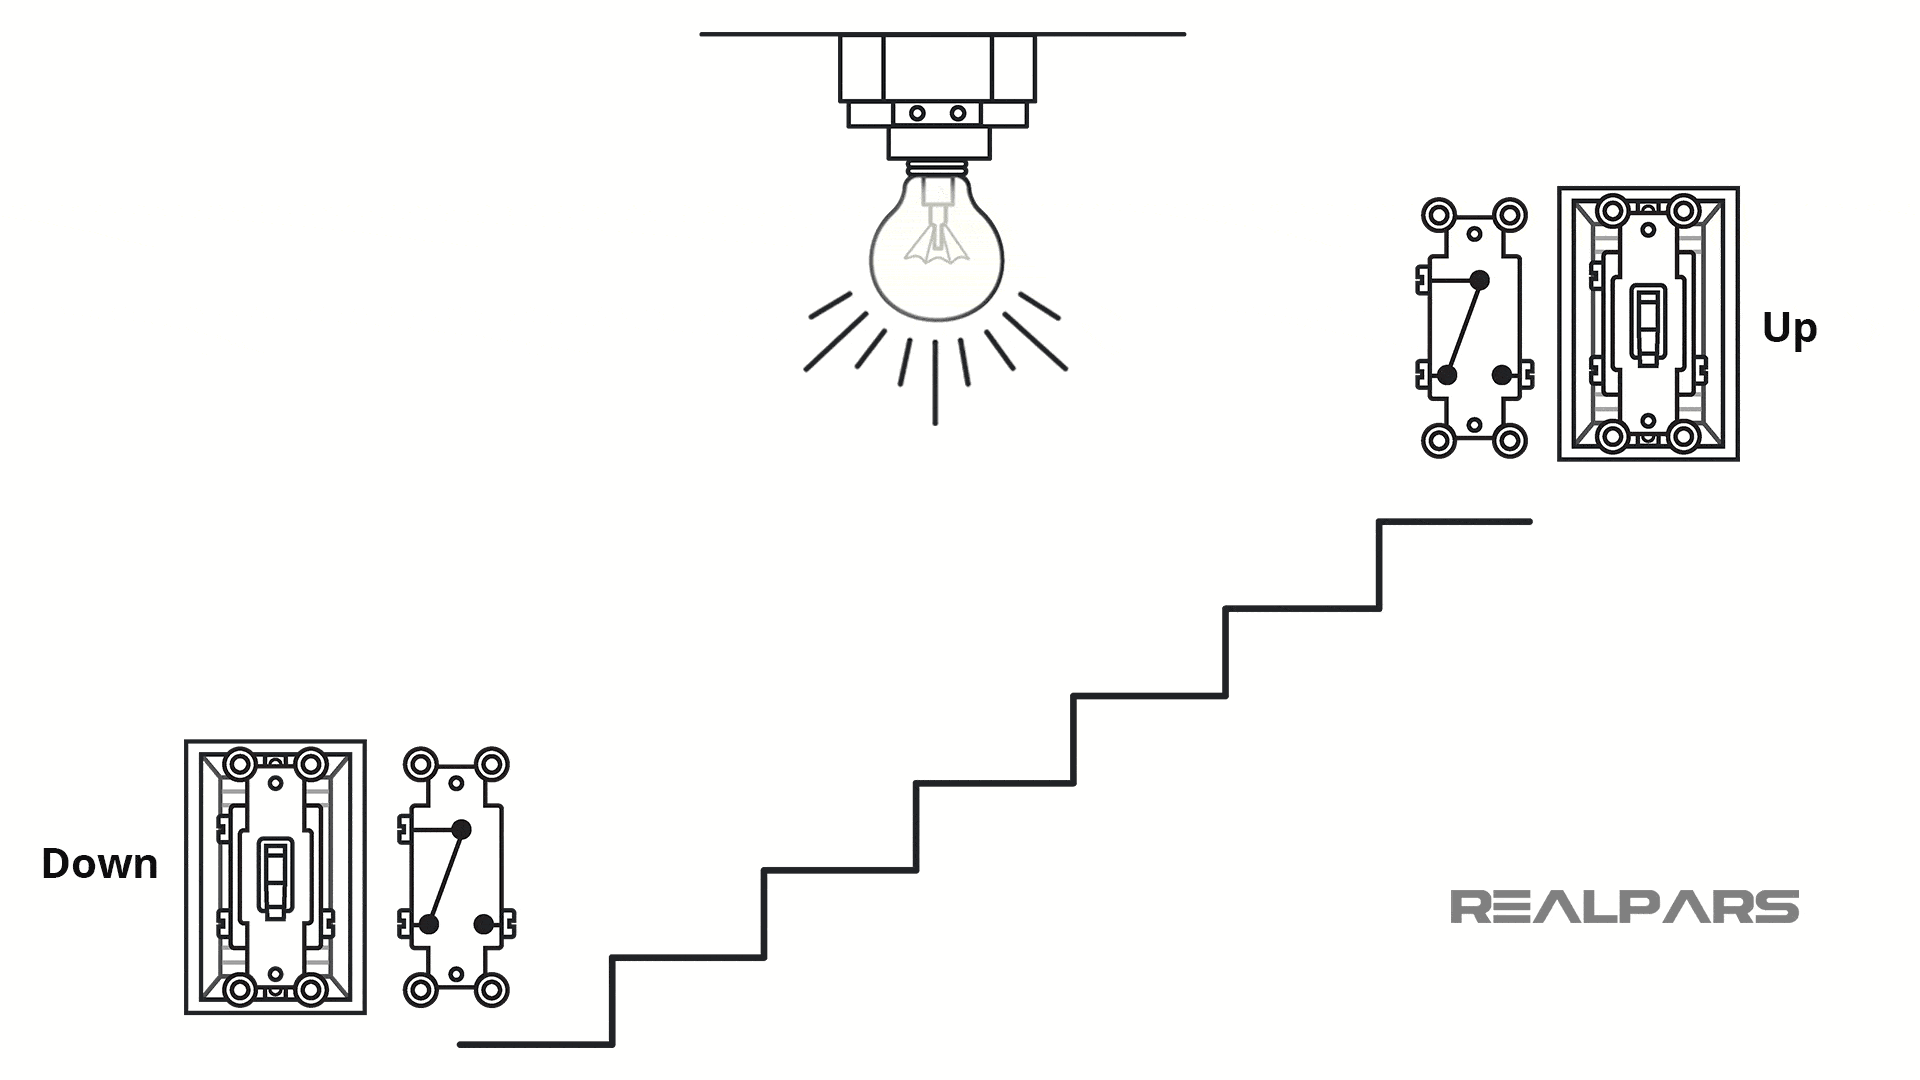 Giải thích sơ đồ nguyên lý mạch điện cầu thang